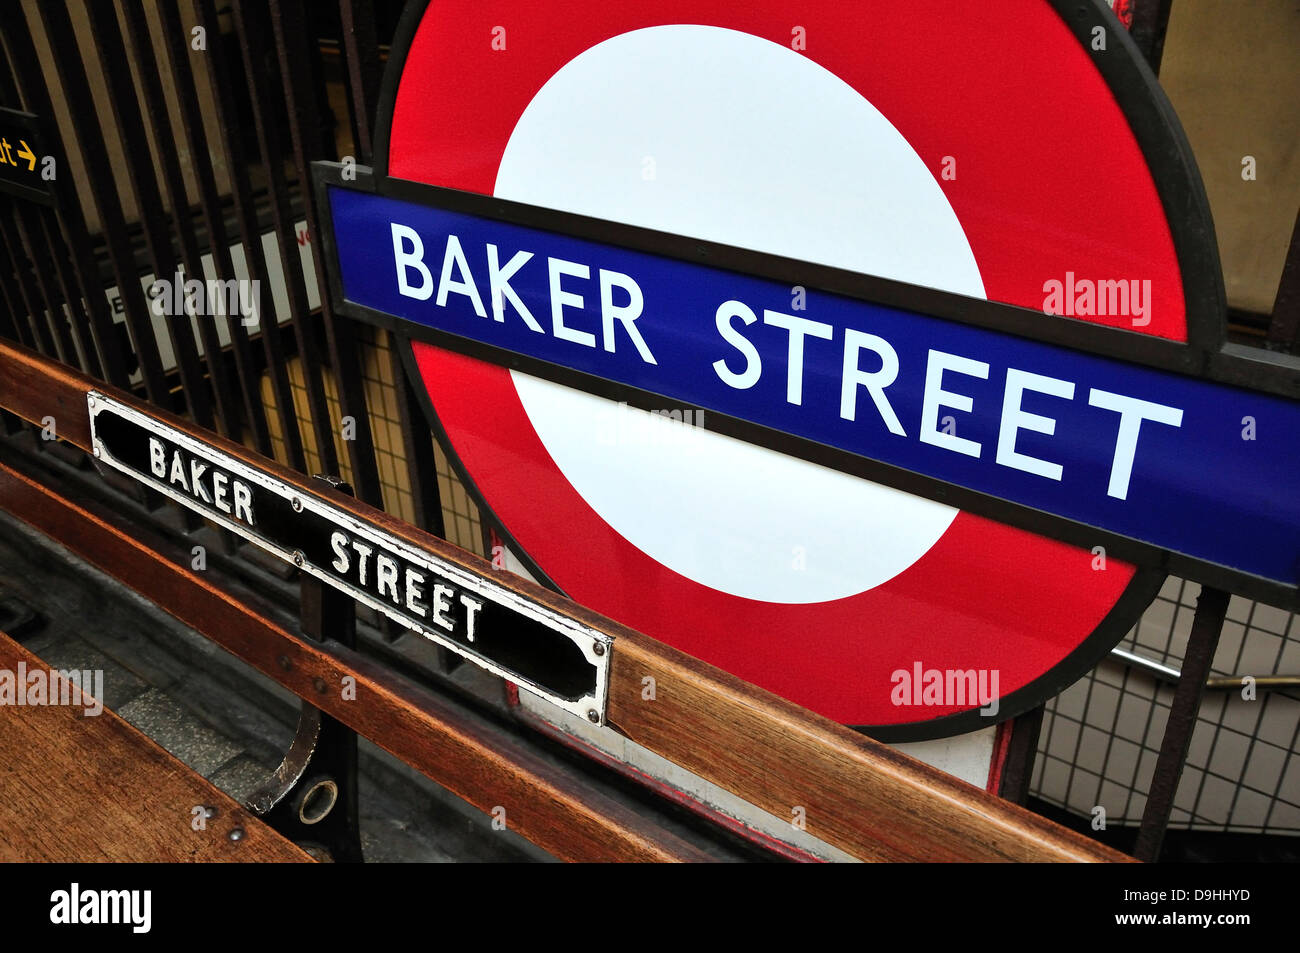 Londres, Angleterre, Royaume-Uni. La station de métro Baker Street. Banc et cocarde Banque D'Images